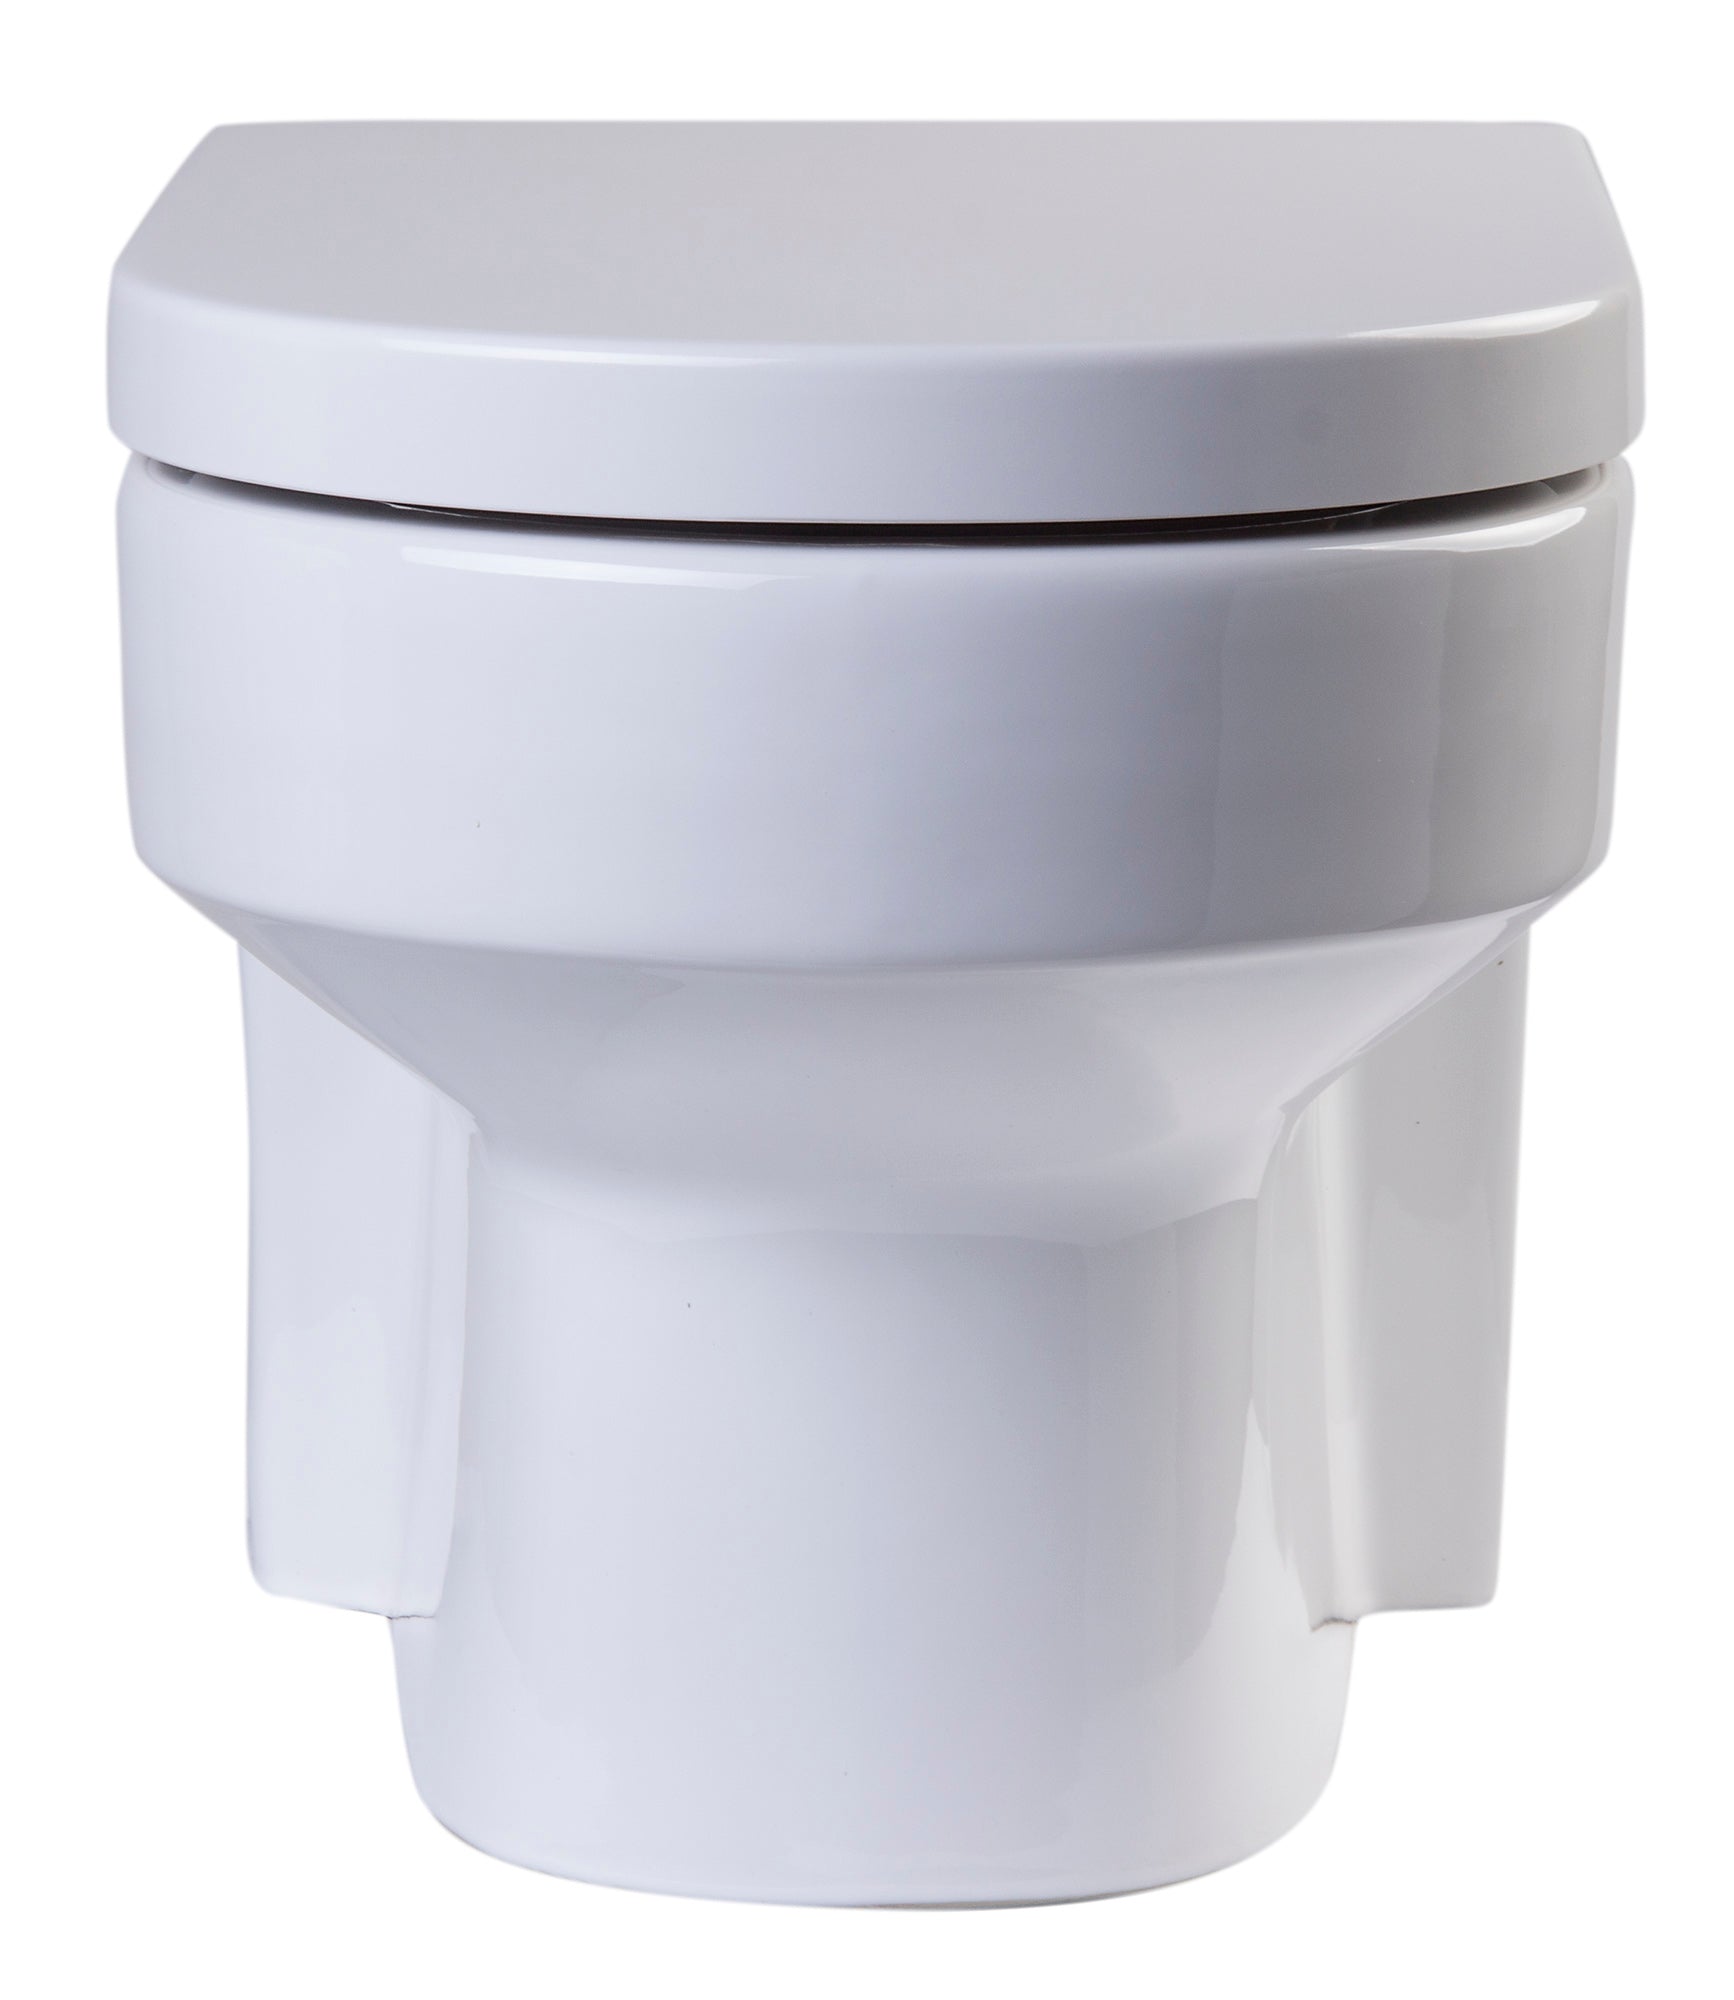 EAGO WD101 Toilet Bowl Wall Mount Dual-Flush Modern White Ceramic